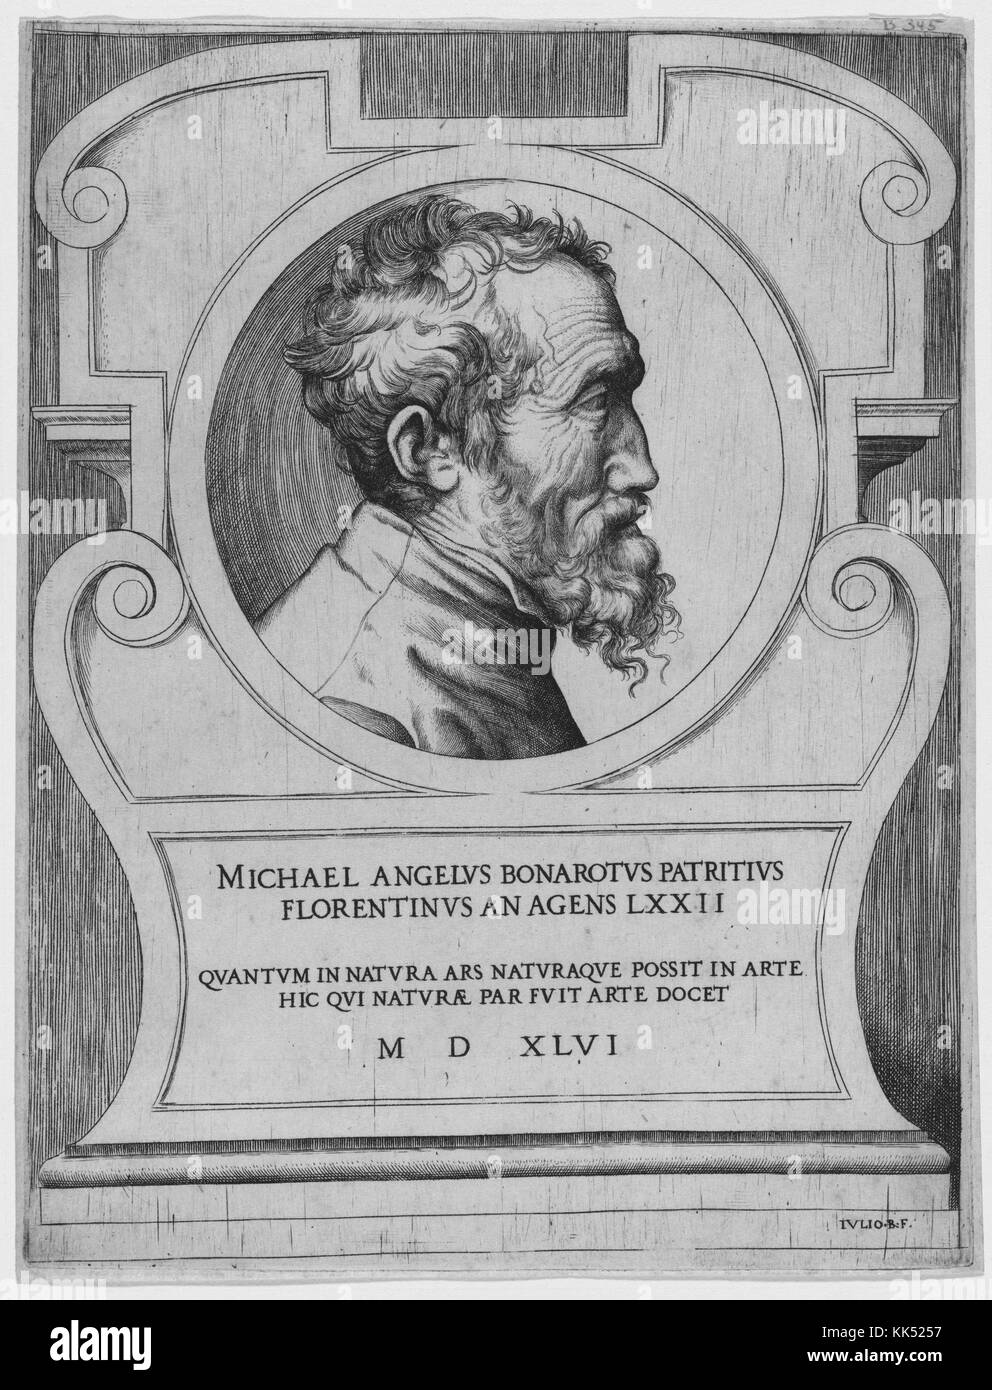 Graviert Portrait von Michelangelo Buonarroti, im Profil, im Alter von 72 Jahren, von giulio bonasoni, 1546 von der New York Public Library. Stockfoto